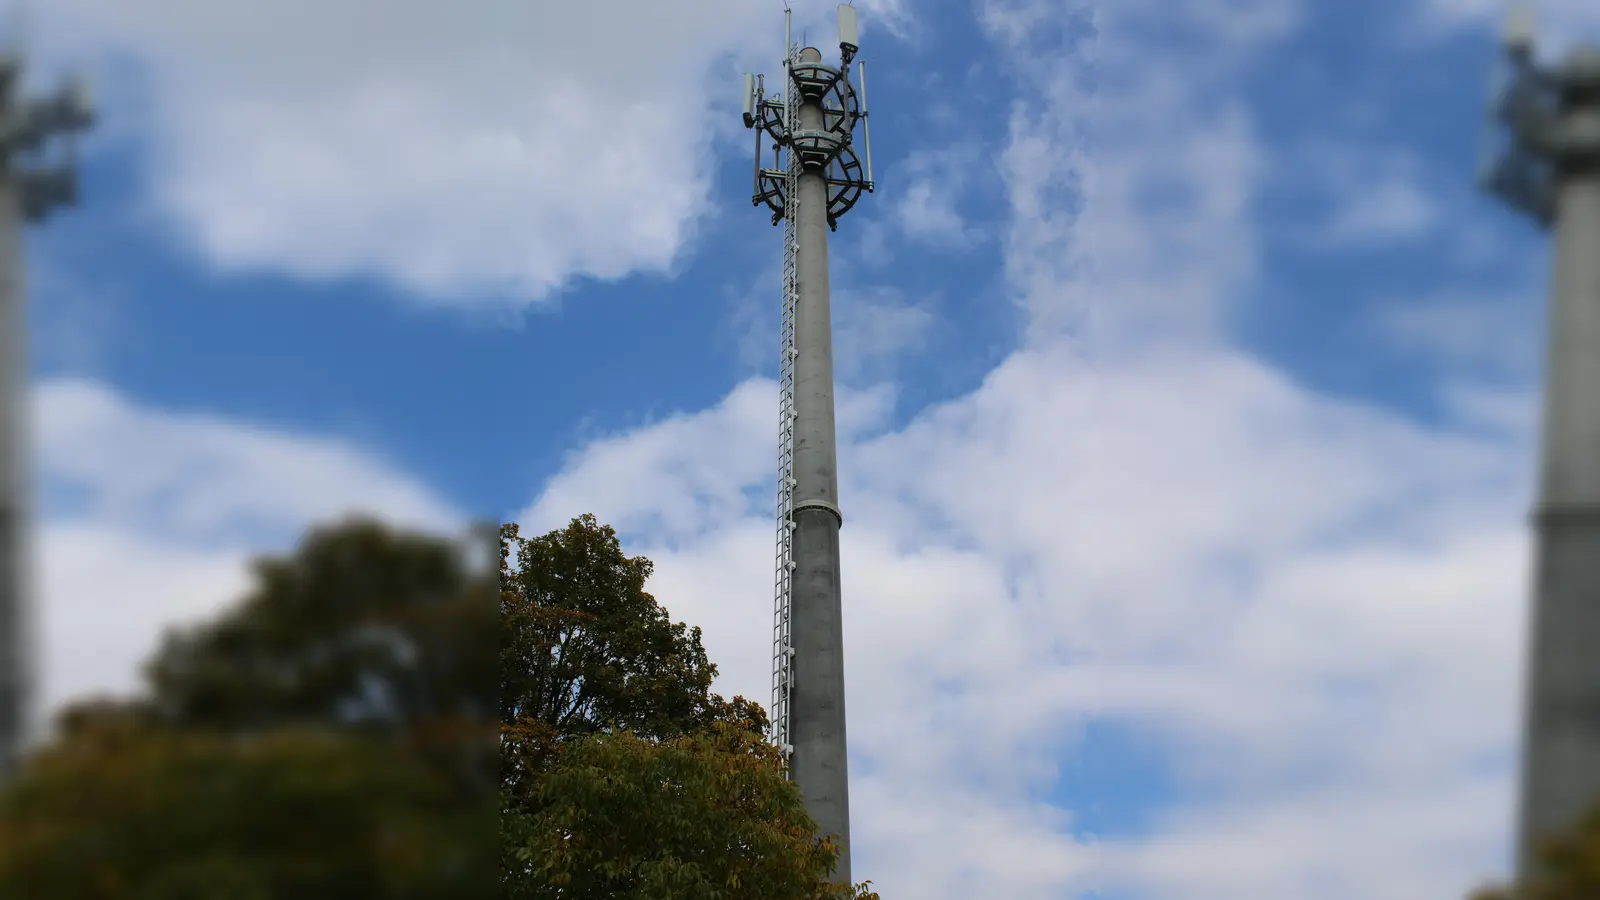 Die Deutsche Funkturm GmbH baute auf dem Bahnhof-Gelände in KLeinberghofen im Auftrag der Telekom einen rund 30 Meter hohen Funkmast. Er wird in Zukunft das Mobilfunknetz der Telekom und gegebenenfalls weiterer Mobilfunkanbieter ergänzen. Ziel ist es, die Versorgung in der Gemeinde Erdweg zu verbessern, so dass nach Fertigstellung die Möglichkeit besteht , schneller und stabiler mobil zu surfen und zu telefonieren. Der Mobilfunkmast ist auch geeignet um zukünftig 5 G-Dienste nutzen. Die Inbetriebnahme ist im kommenden Jahr geplant, teilte die Gemeine mit.<br><br> (Foto: Franz Hofner)